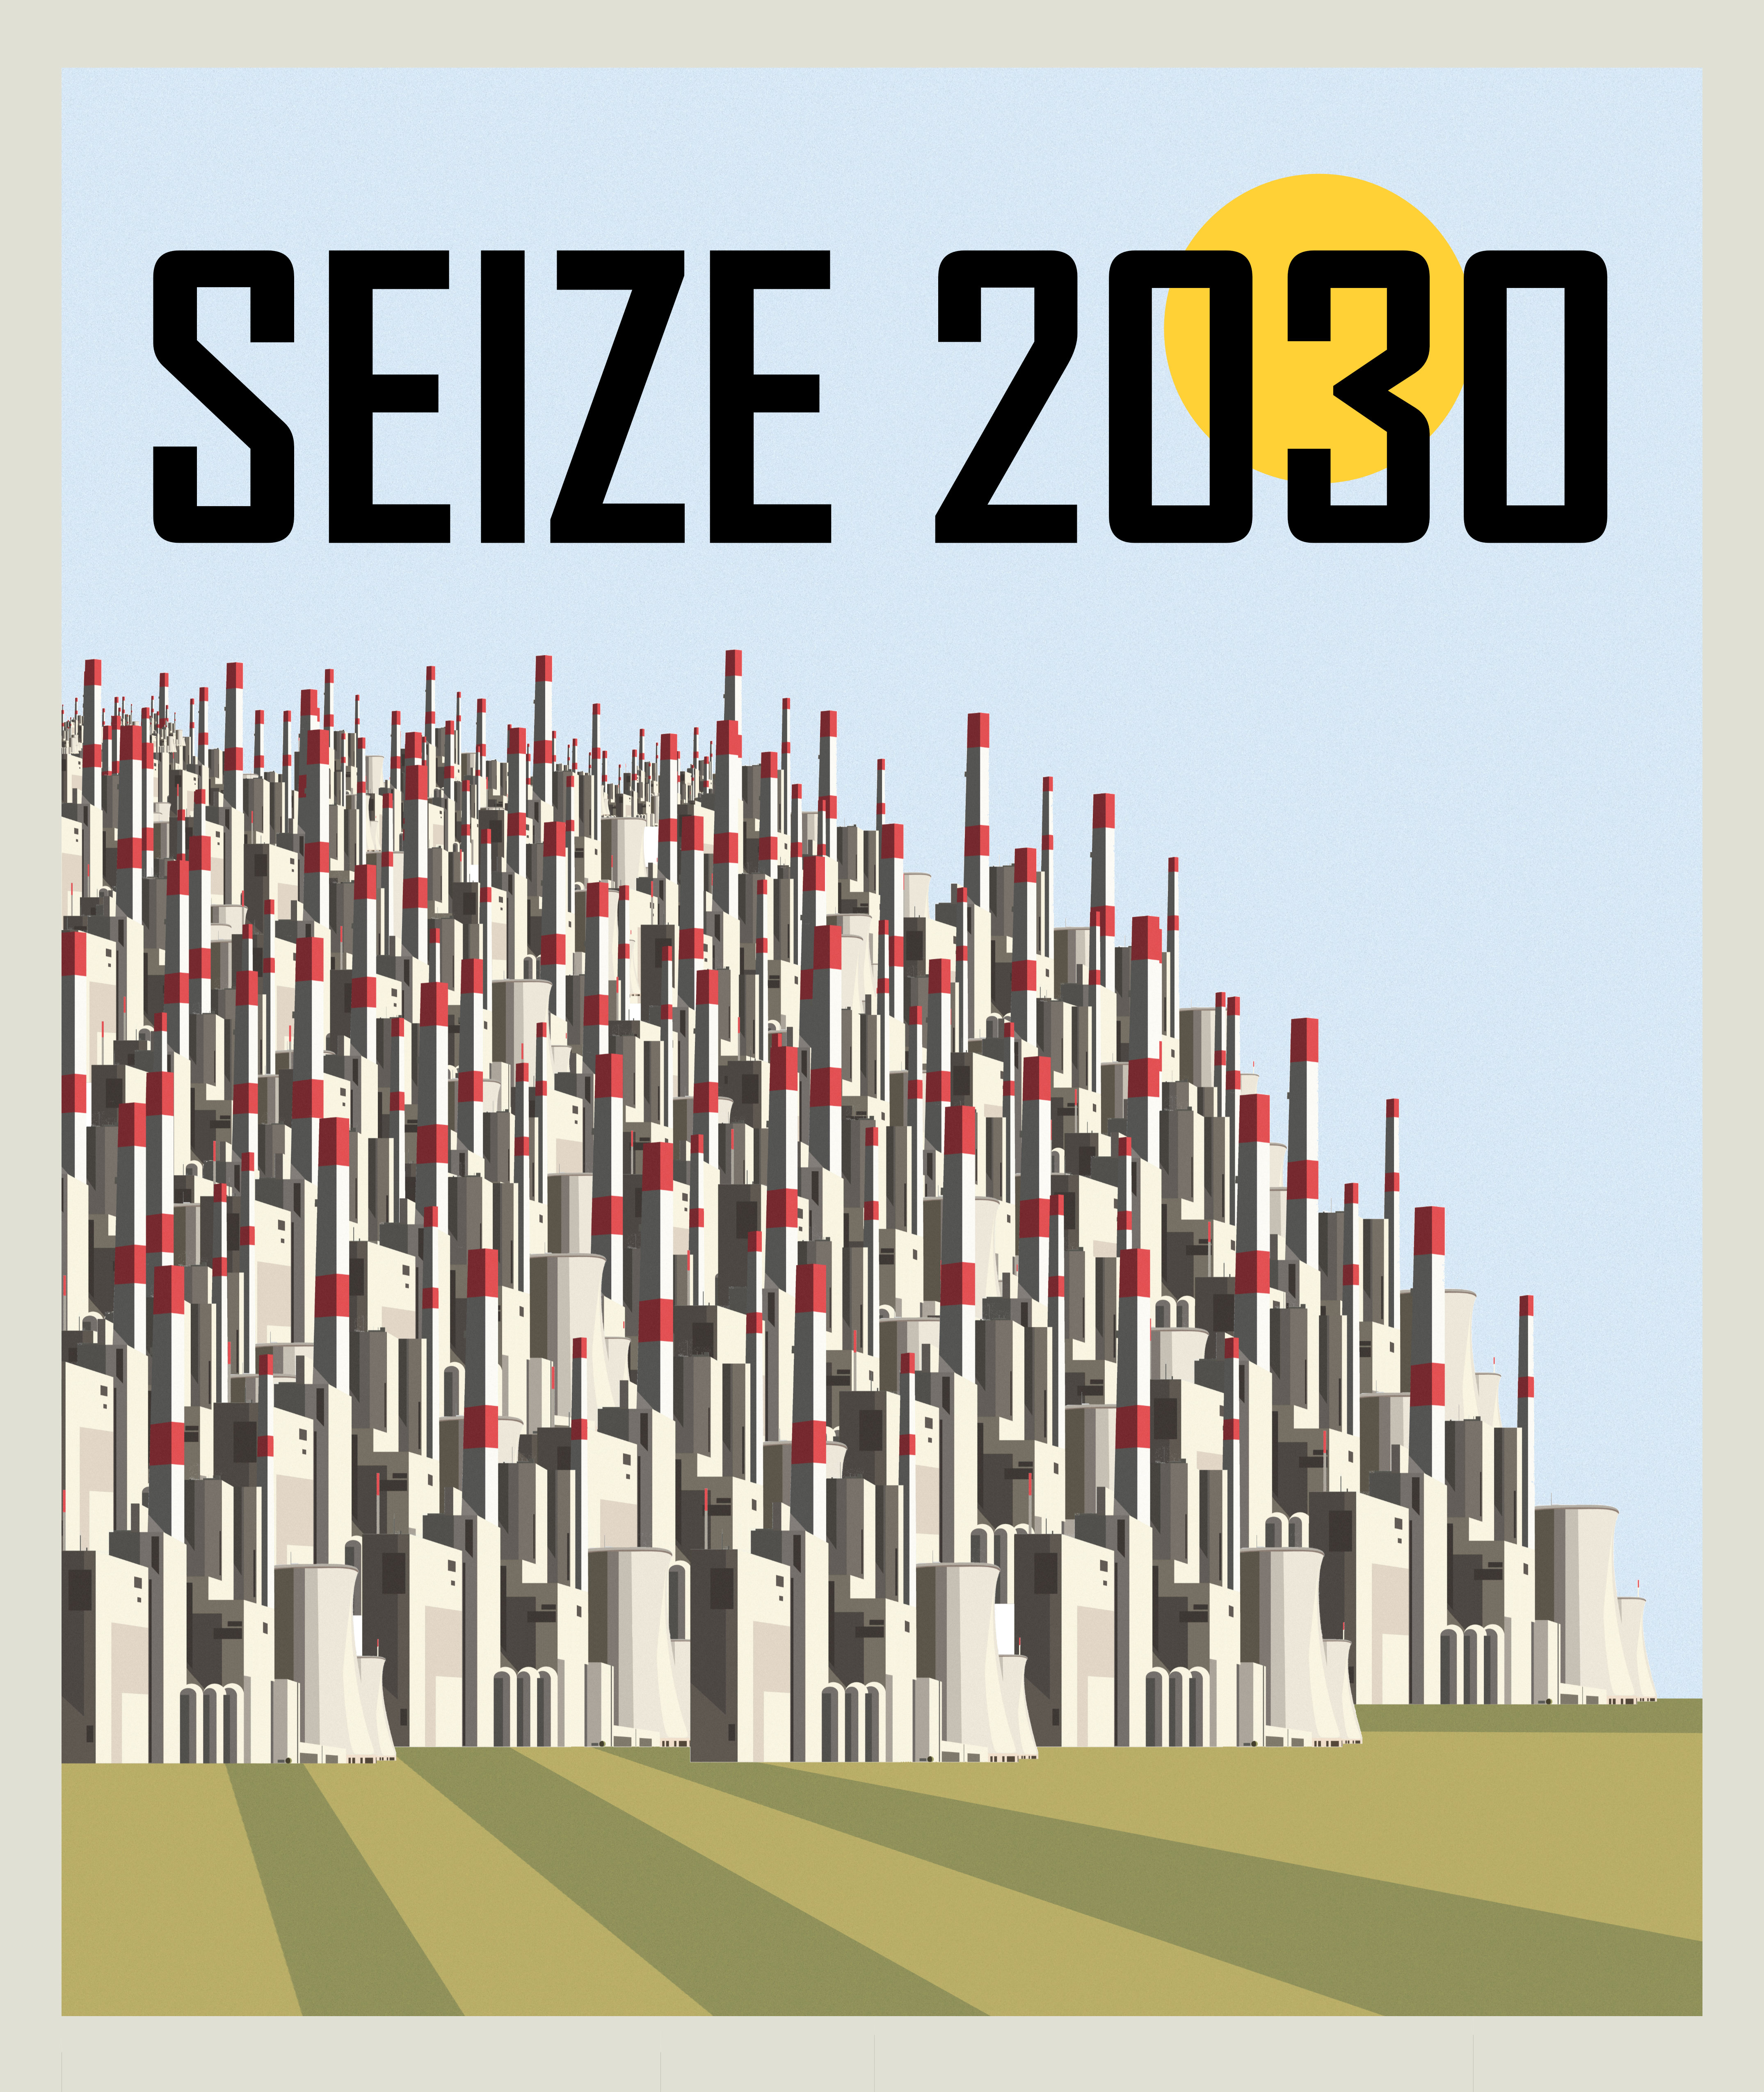 SEIZE 2030